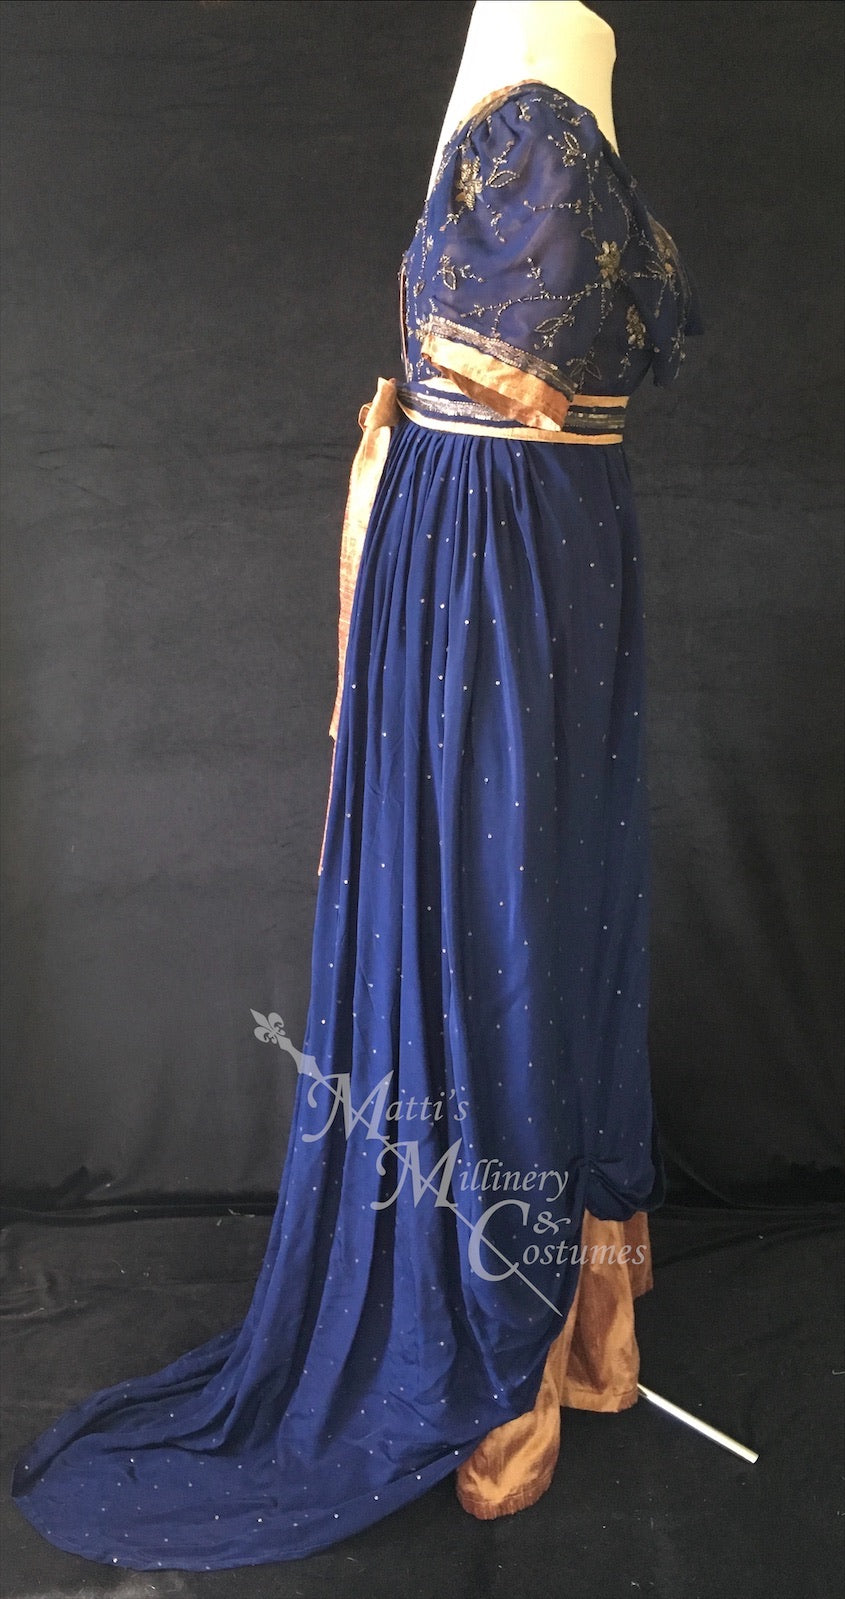 Jane Austen Regency Day Dress in navy blue and gold silk sari